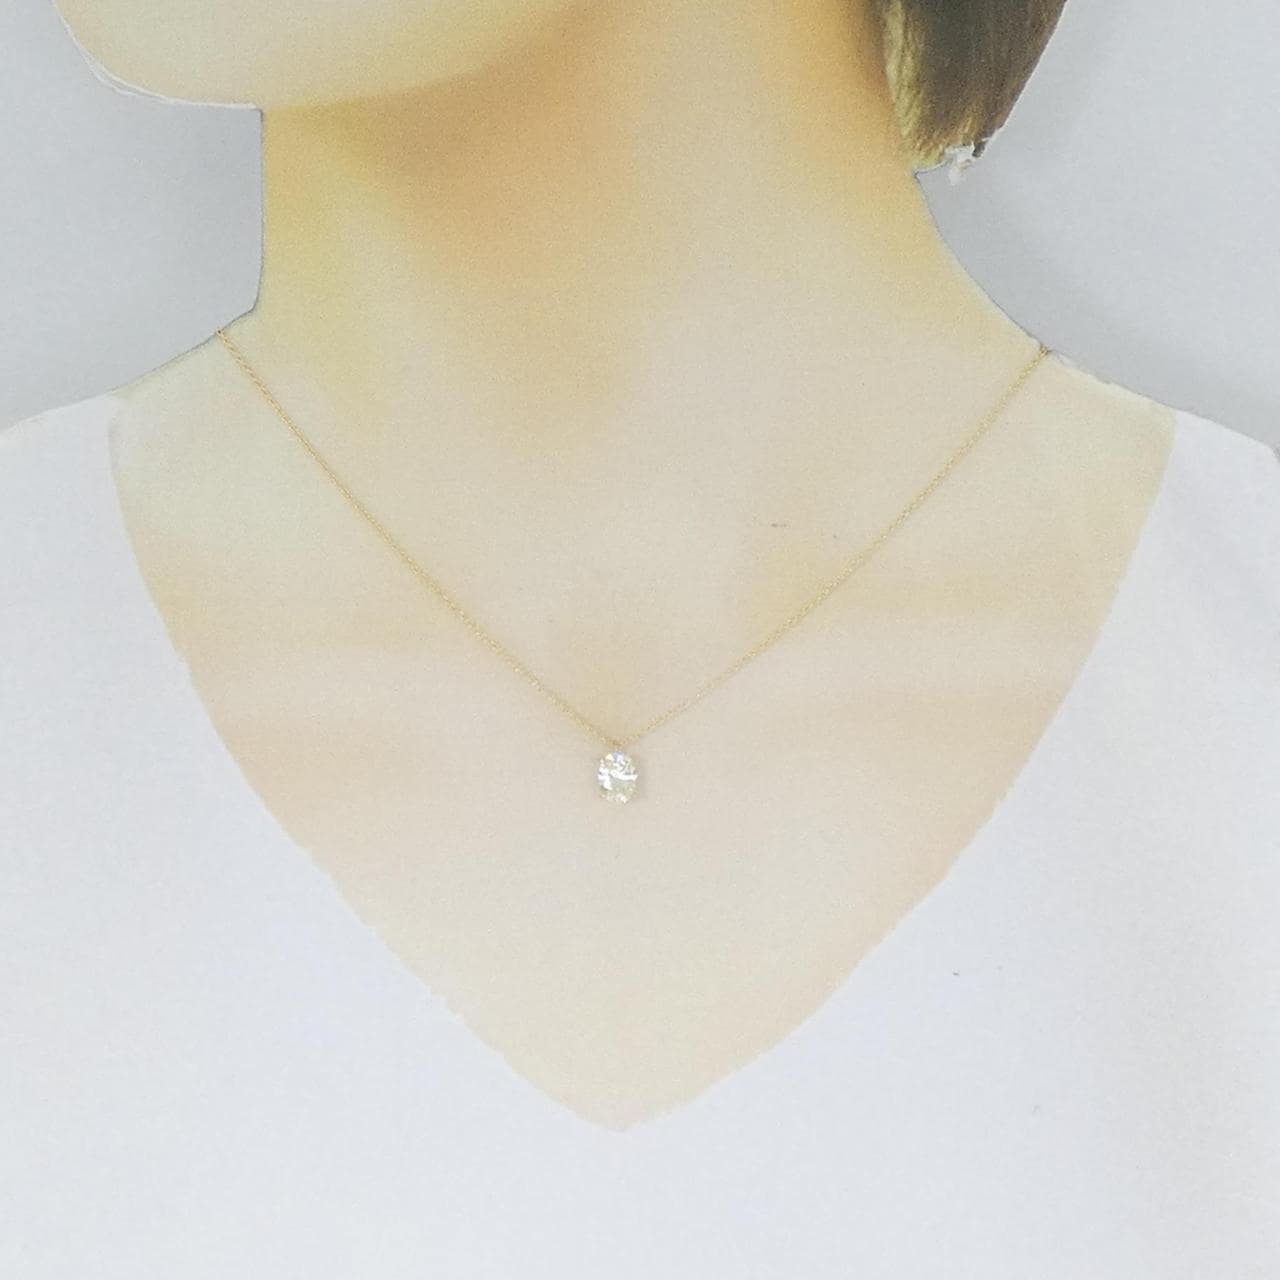 [Remake] K18YG Diamond Necklace 1.021CT M VS2 Oval Cut